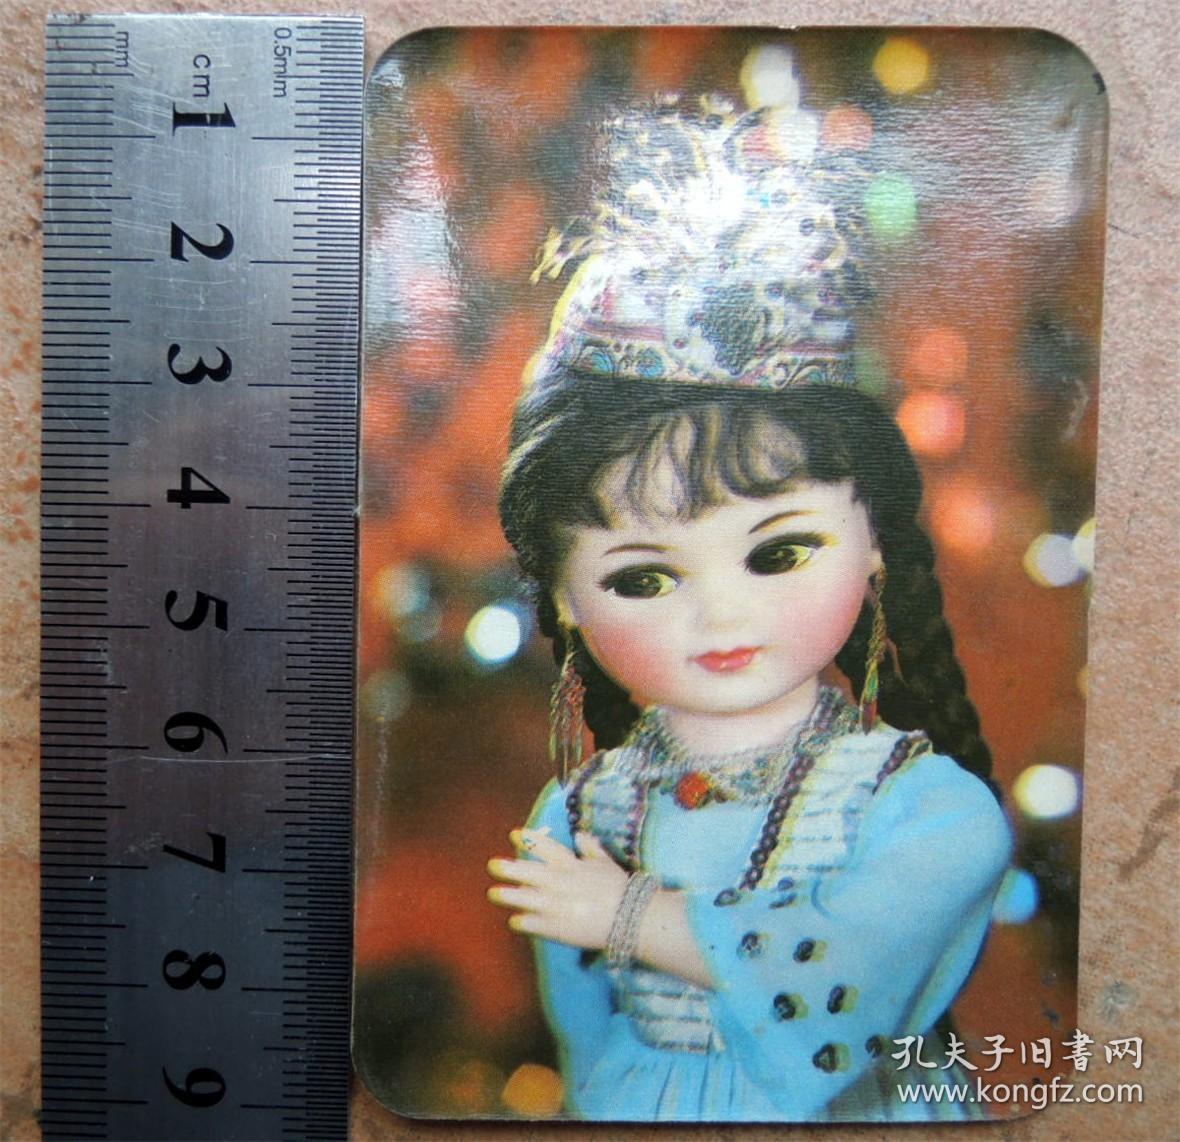 年历卡收藏190902-1983年彩印新疆女孩玩偶-北京出品